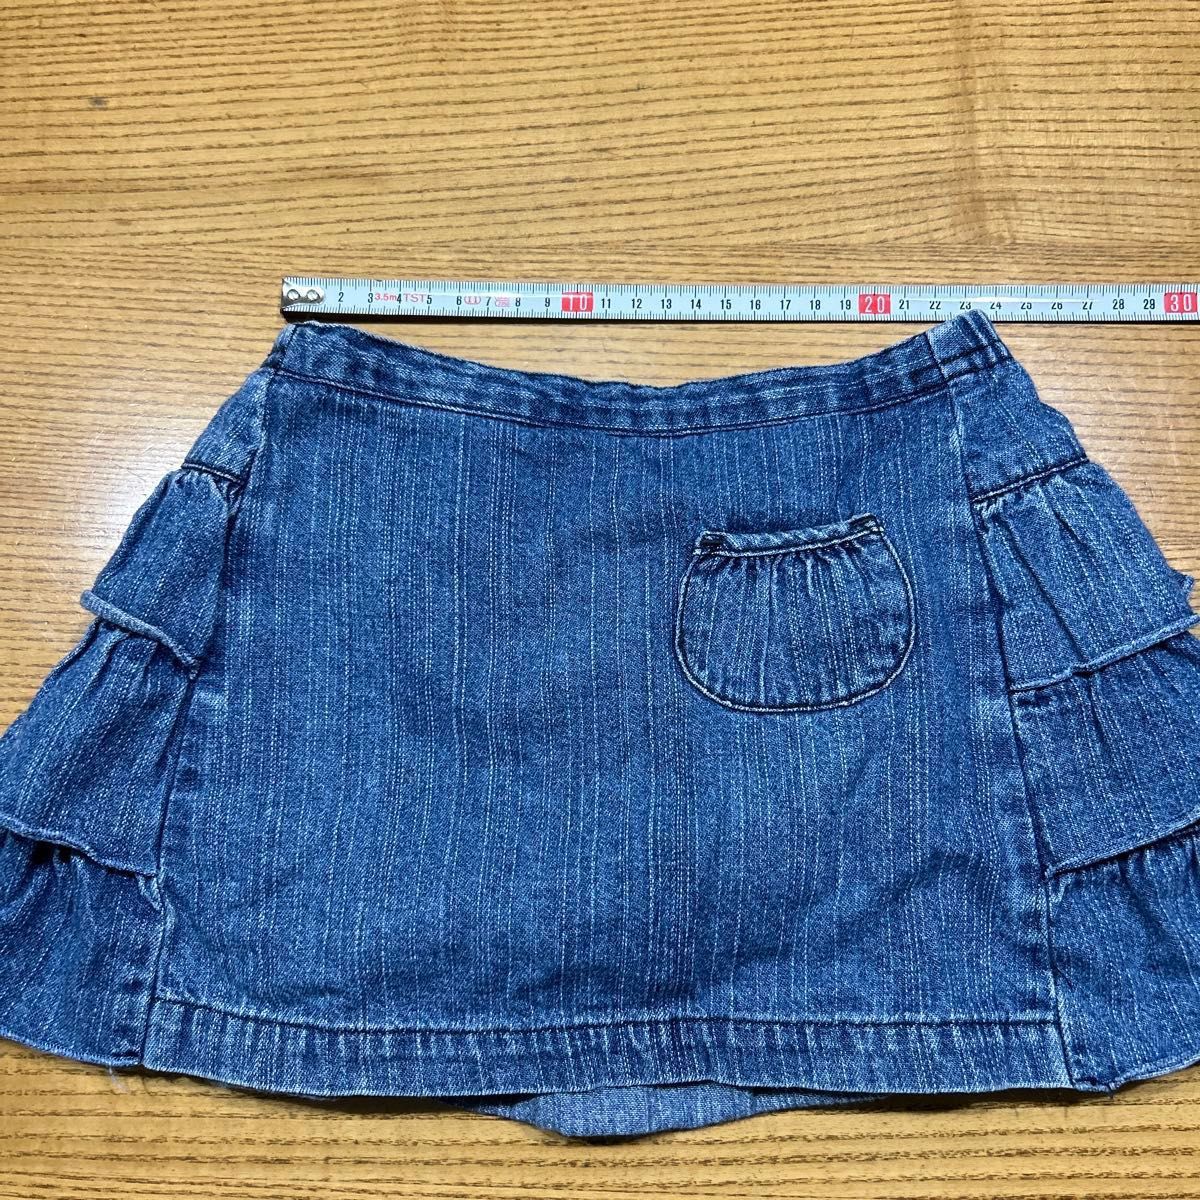 【Gymboree】ティアード デニムスカート 3段フリル スカート インナーパンツ付き 2T (95cm)